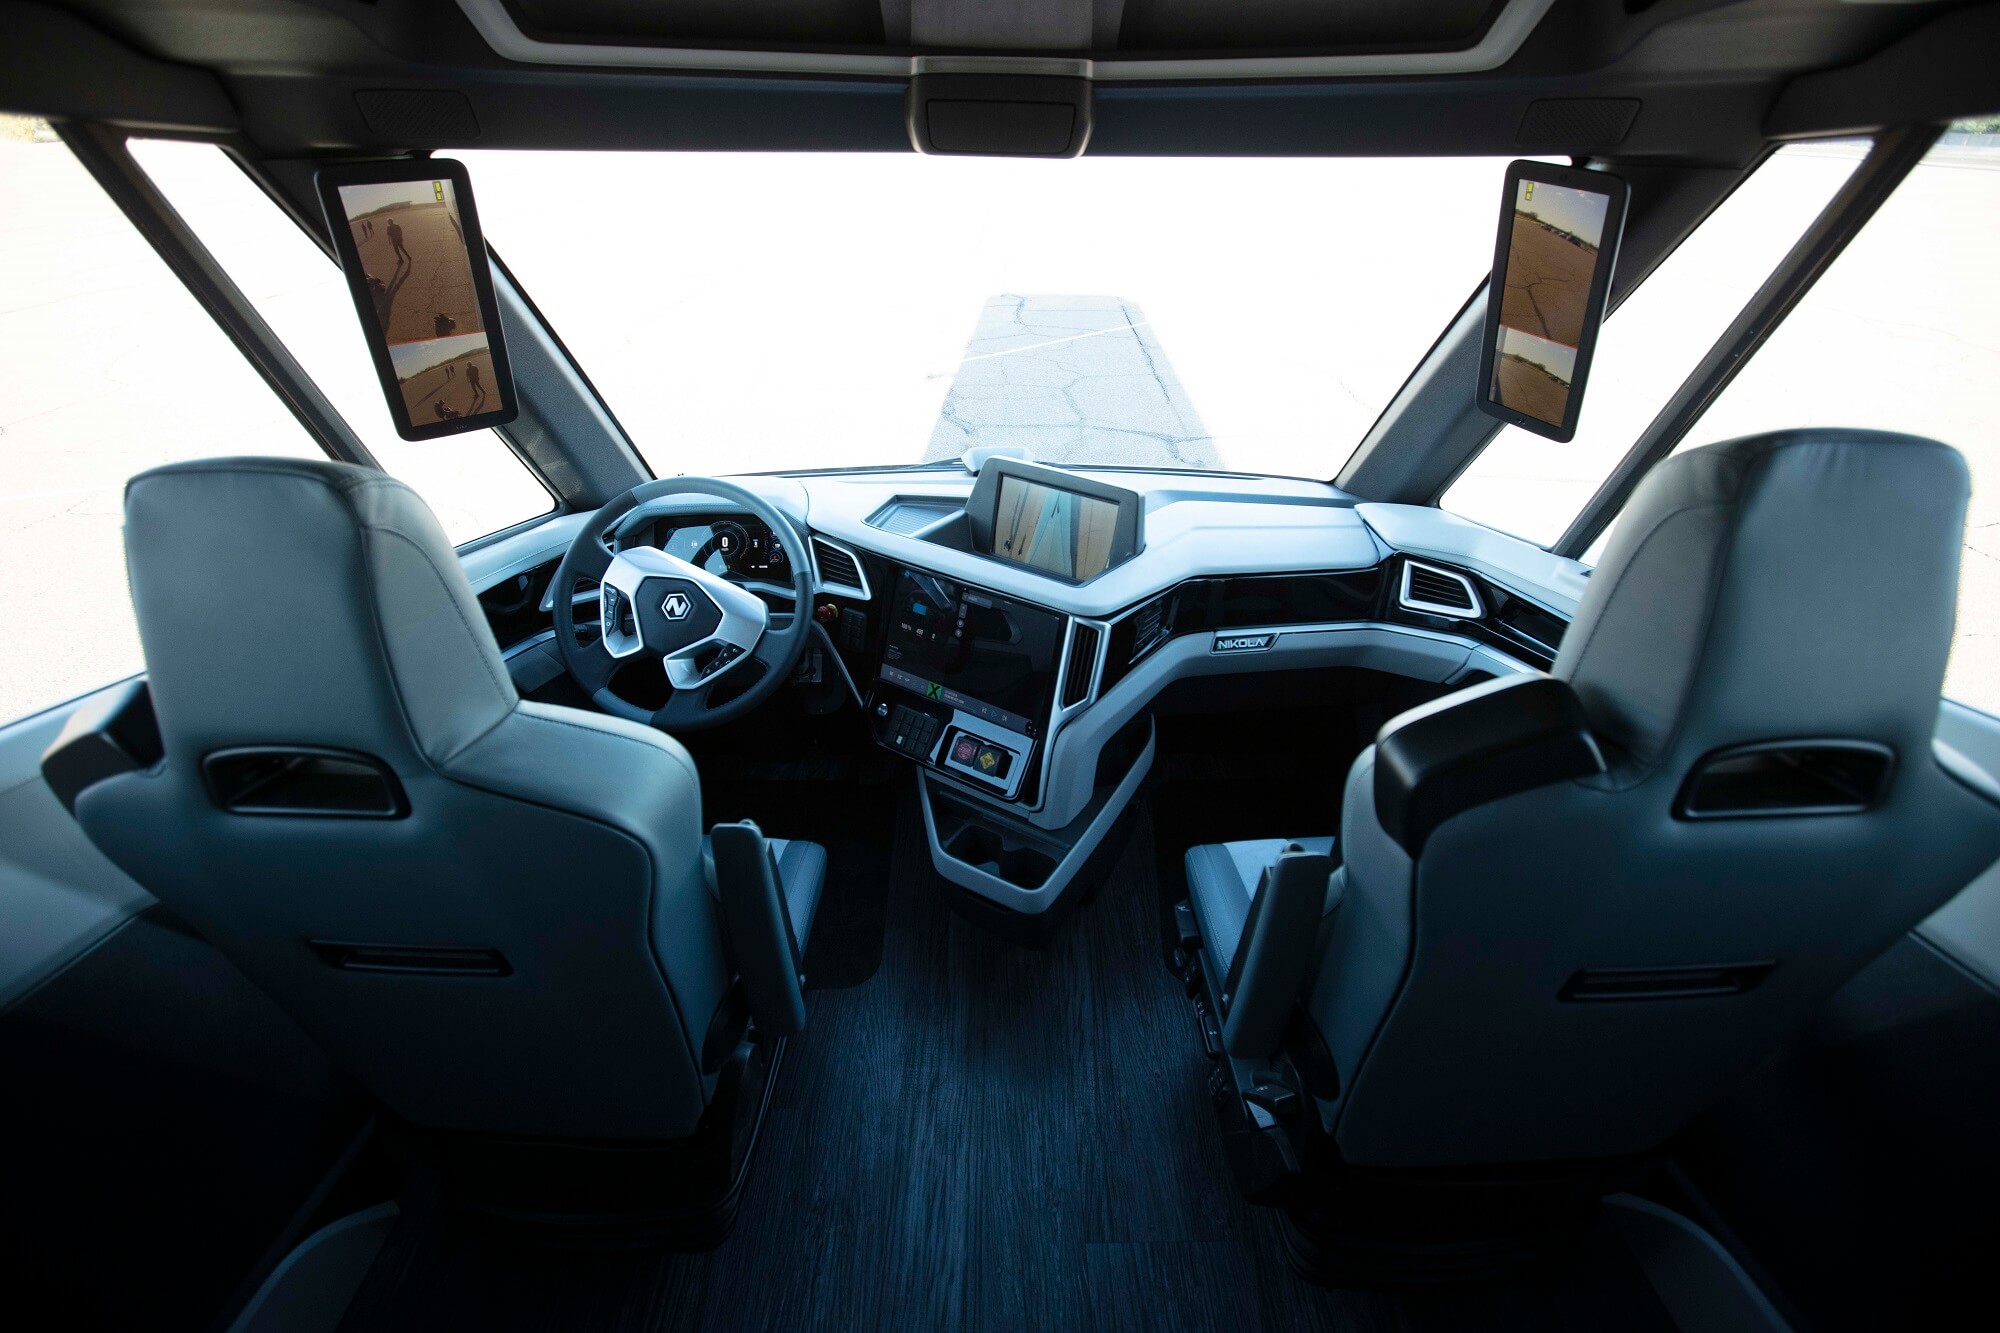 Interior of the Nikola Two autonomous truck